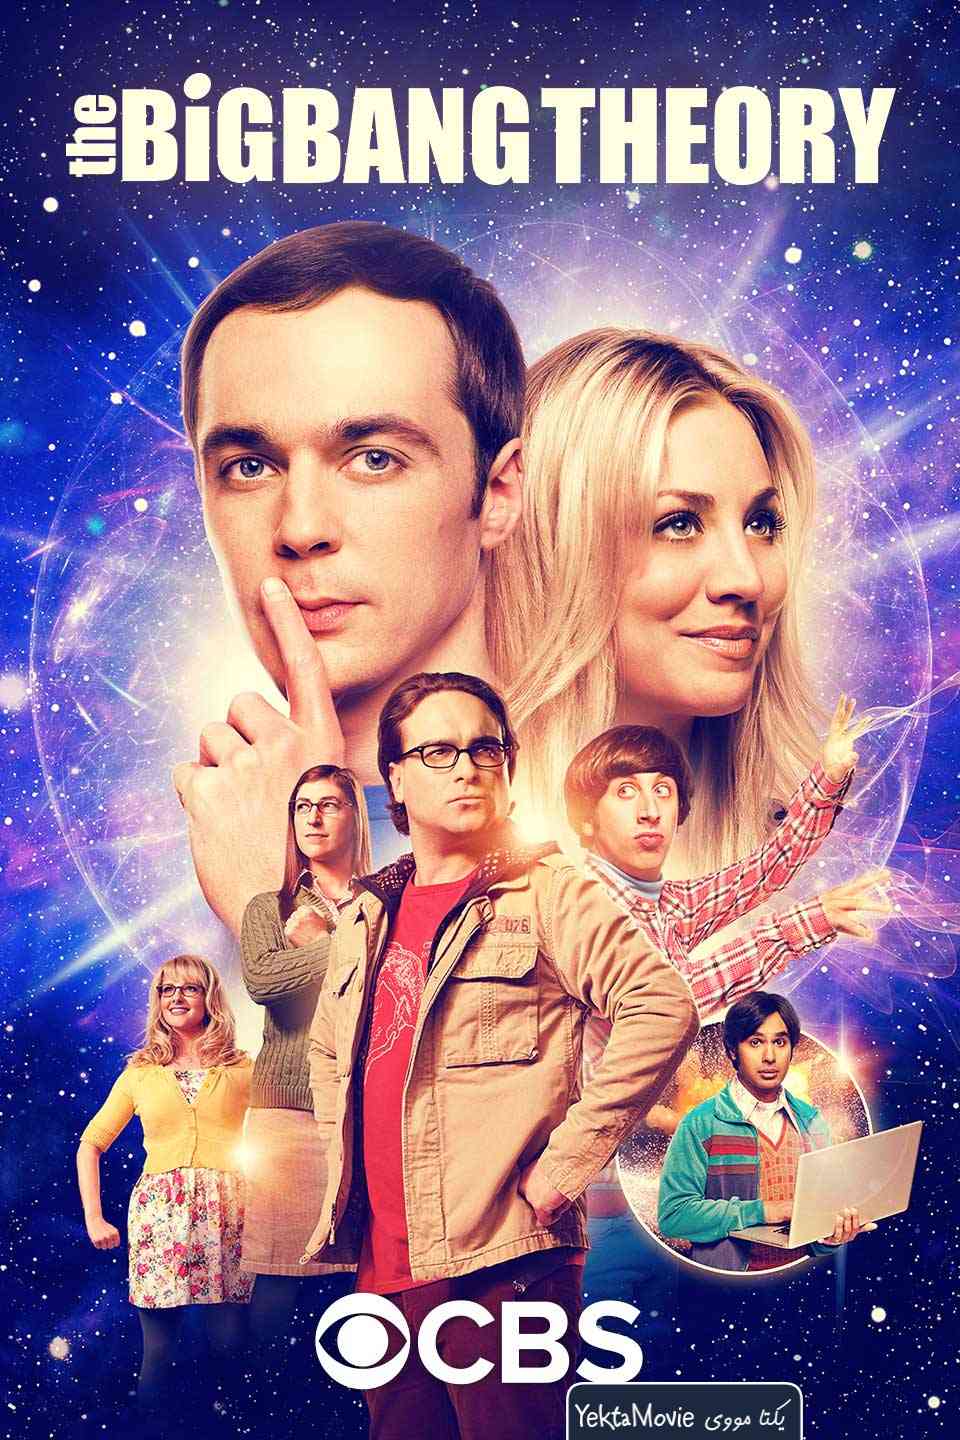 سریال The Big Bang Theory 2007 ( نظریه انفجار بزرگ ۲۰۰۷ )